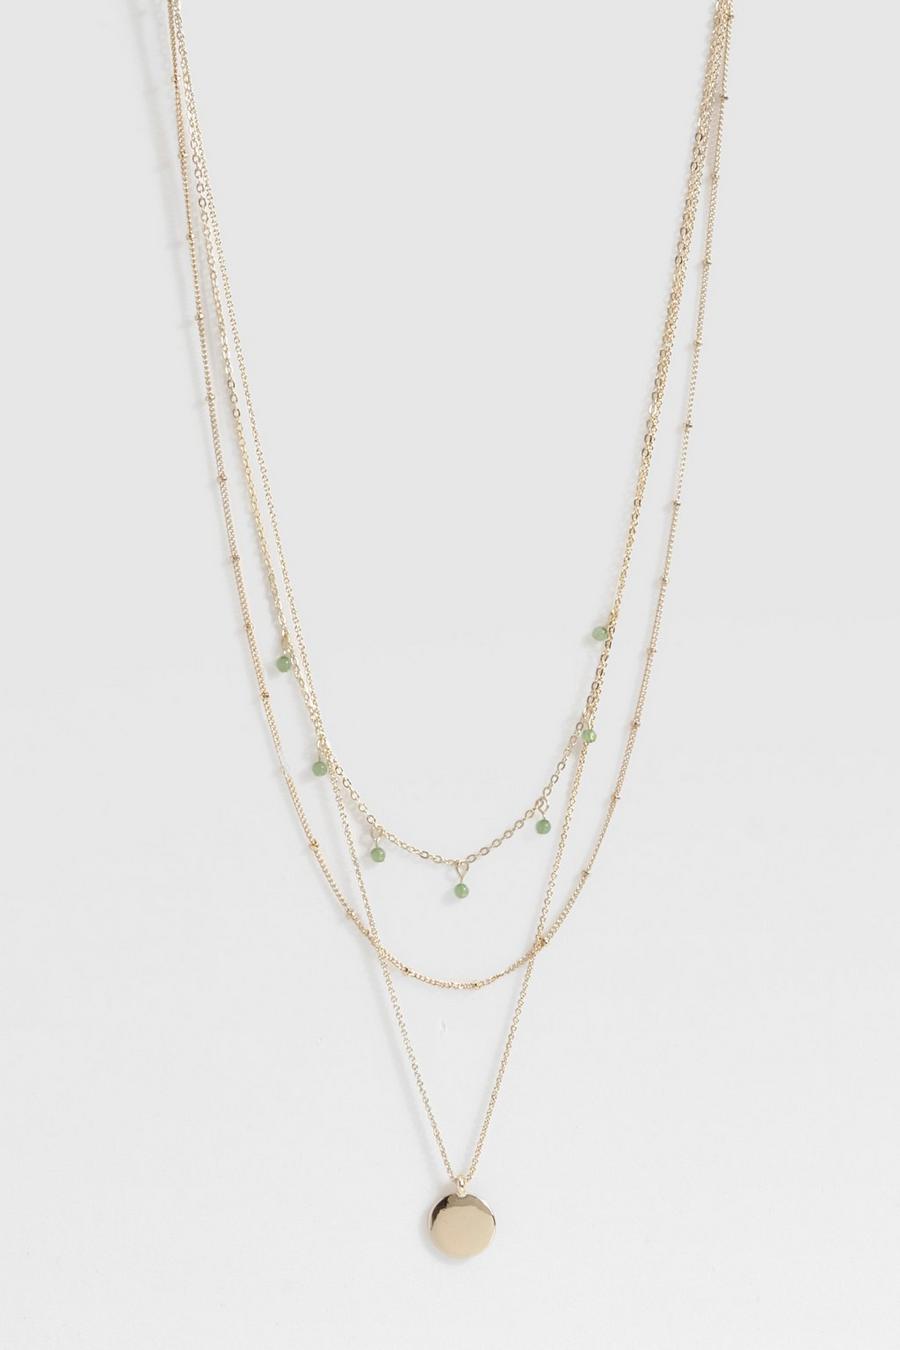 Halskette mit grünem Stein, Gold